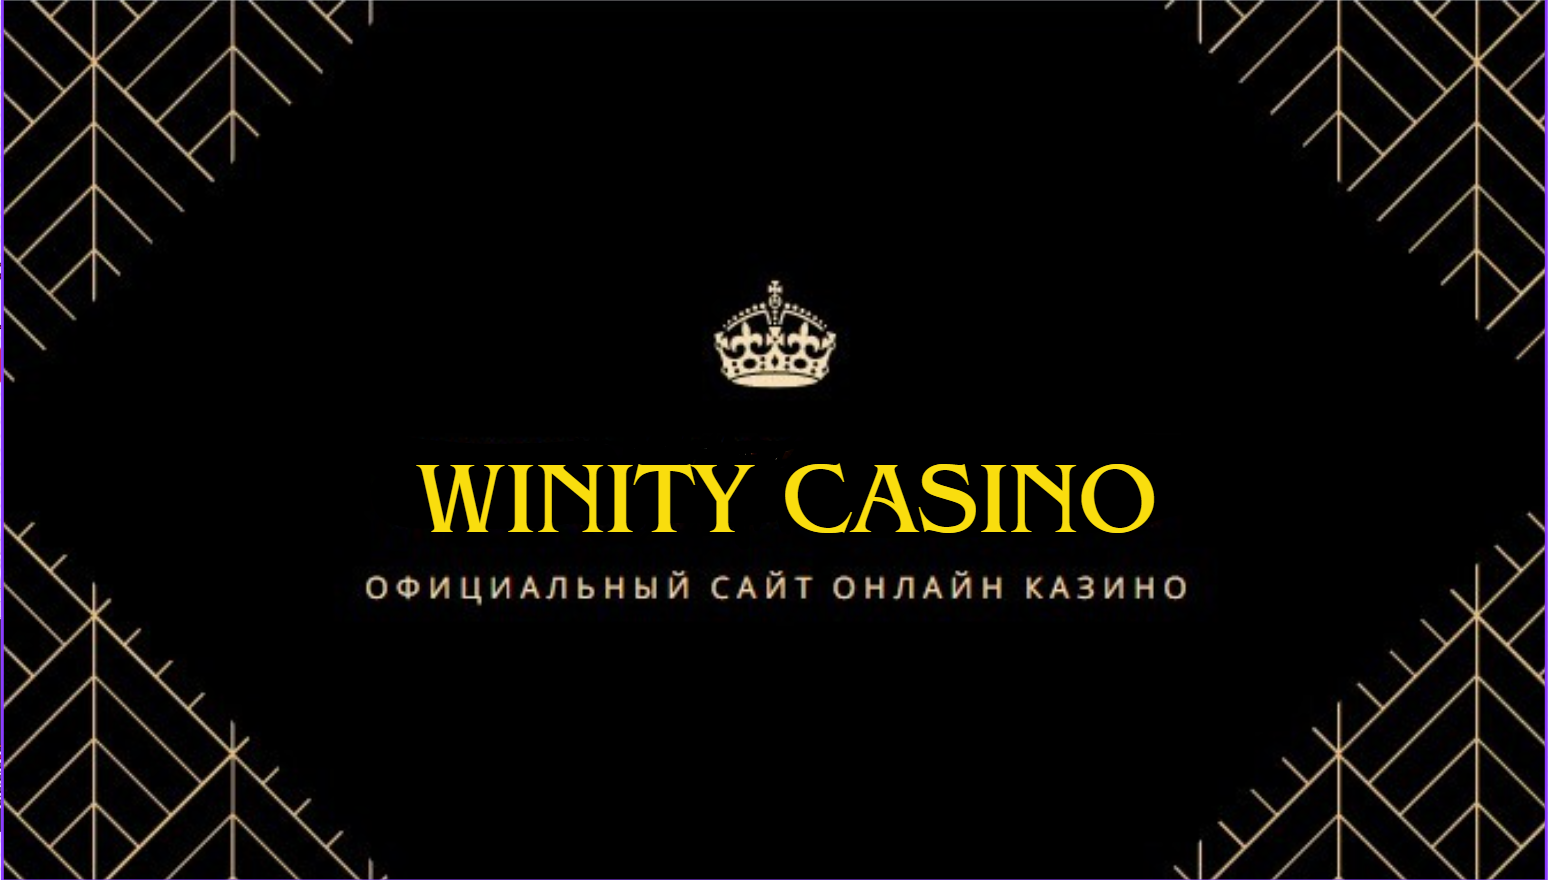 Winity Casino мобильная версия